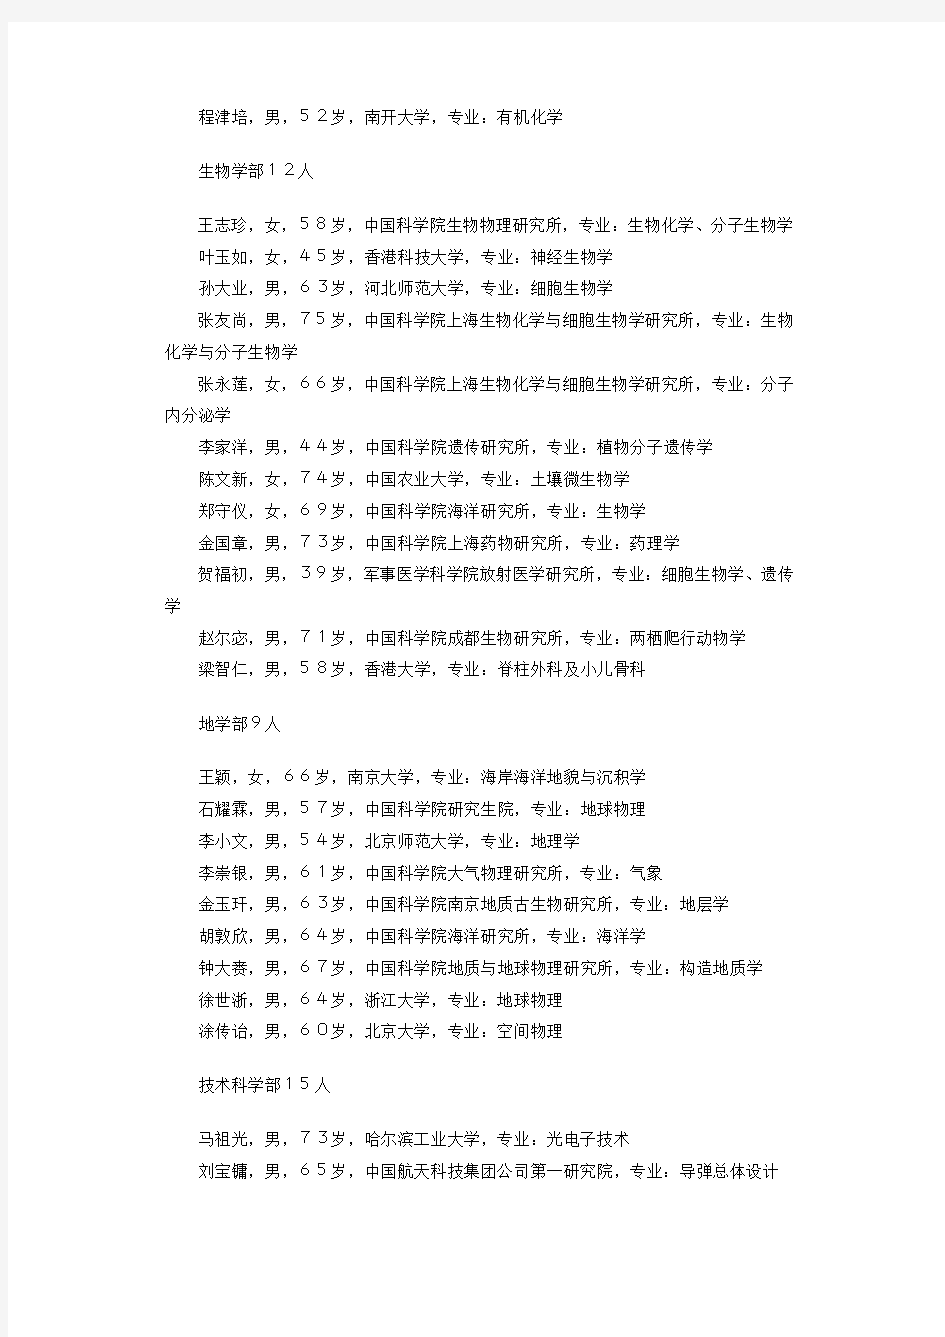 2001年中国科学院院士增选当选名单